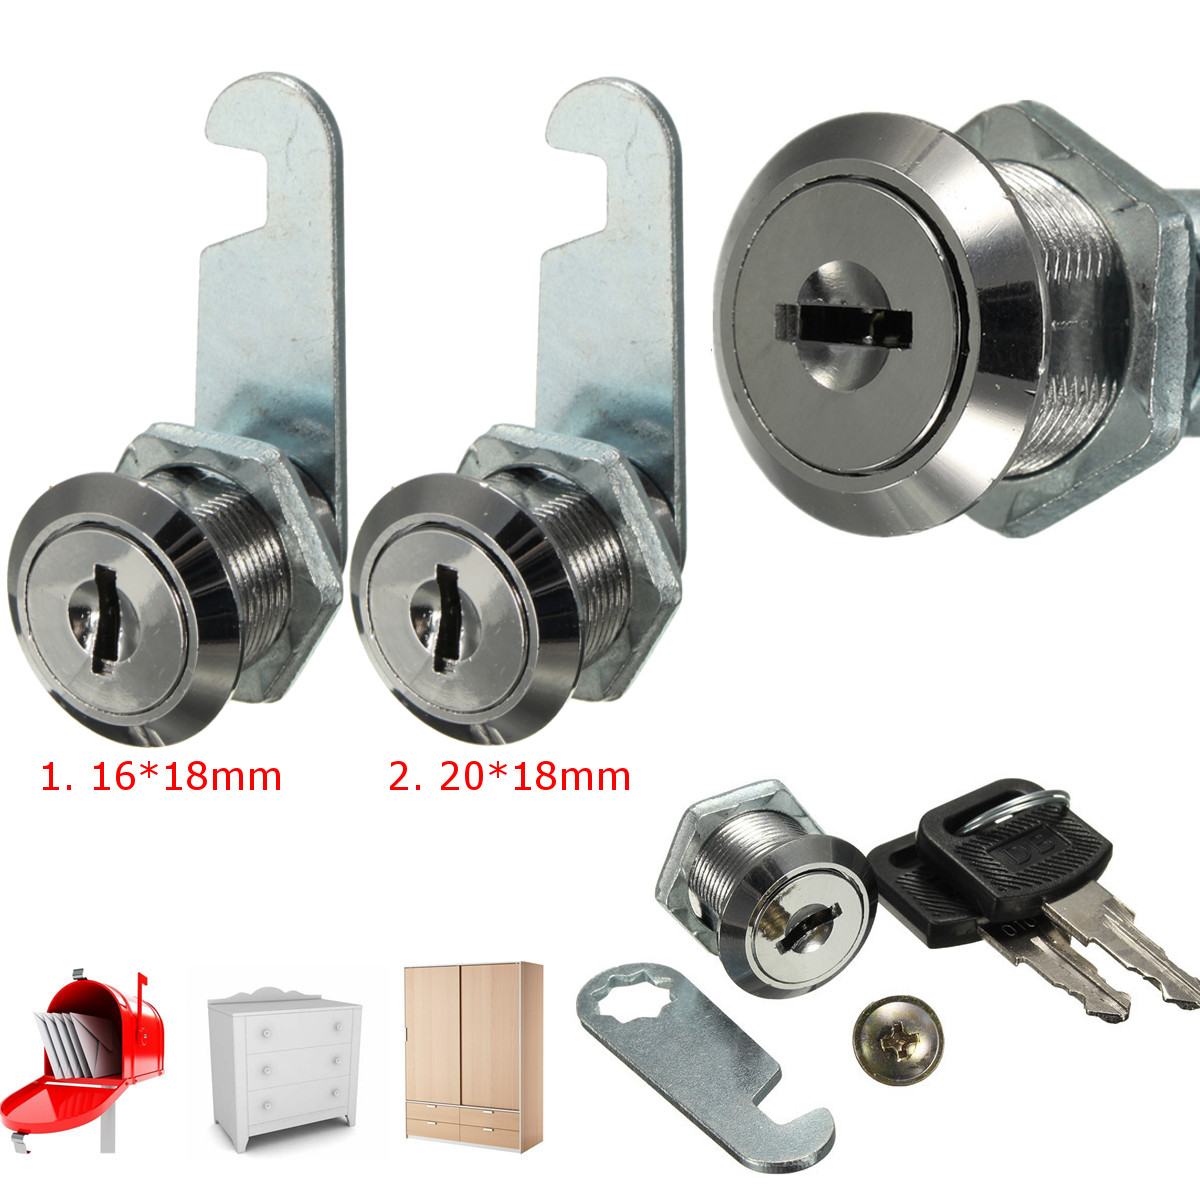 16mm Aluminum Alloy Cam Lock For Cabinet Drawer Locker Mailbox Lockand & 2 Keys 